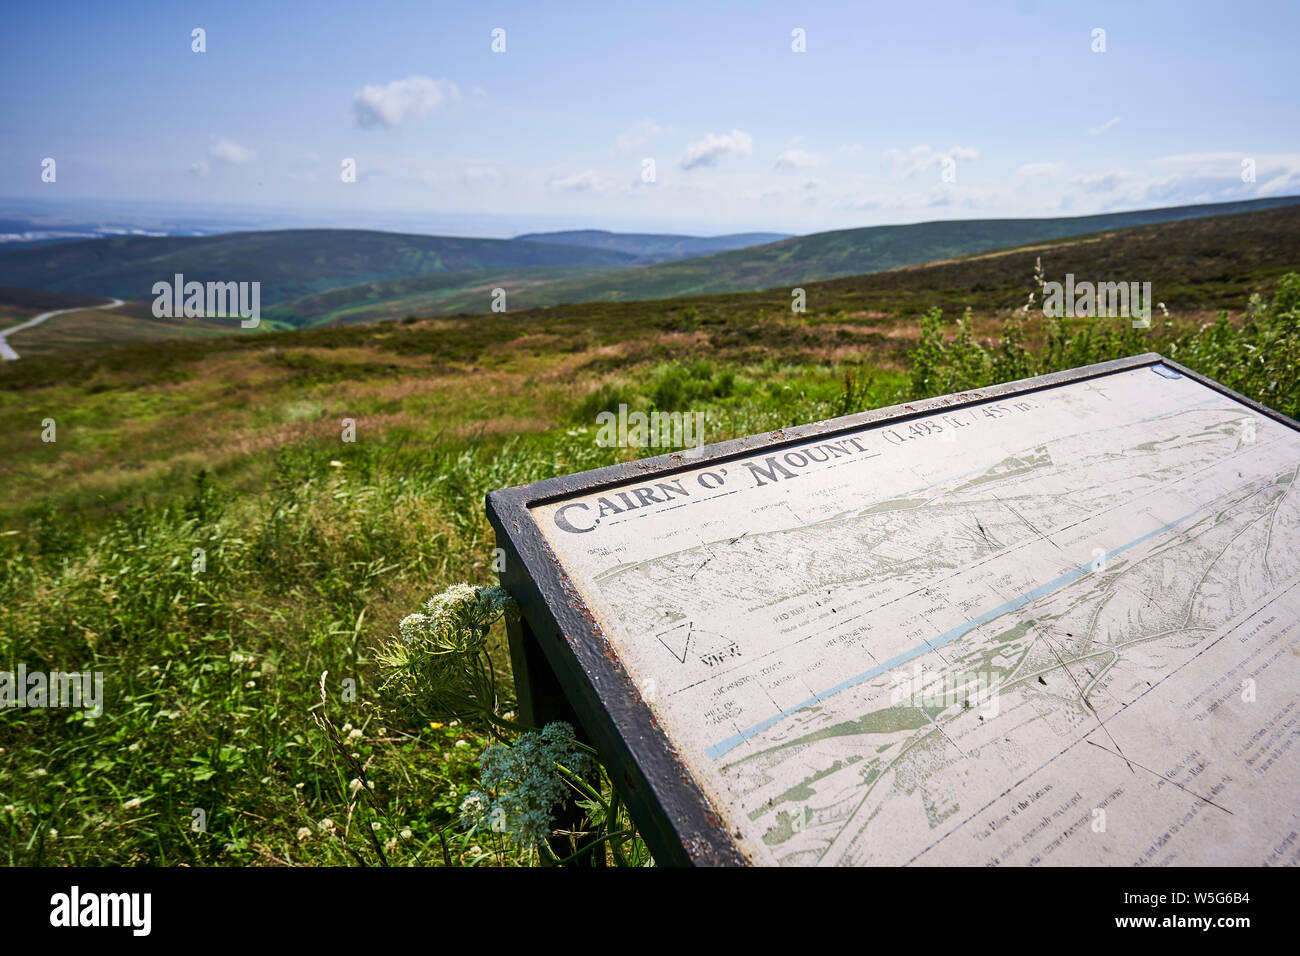 Cairn O'Monat/Cairn O'Berg ist ein hoher Berg in Aberdeenshire, Schottland. Der Ortsname ist ein Überleben der alten Namen. Stockfoto